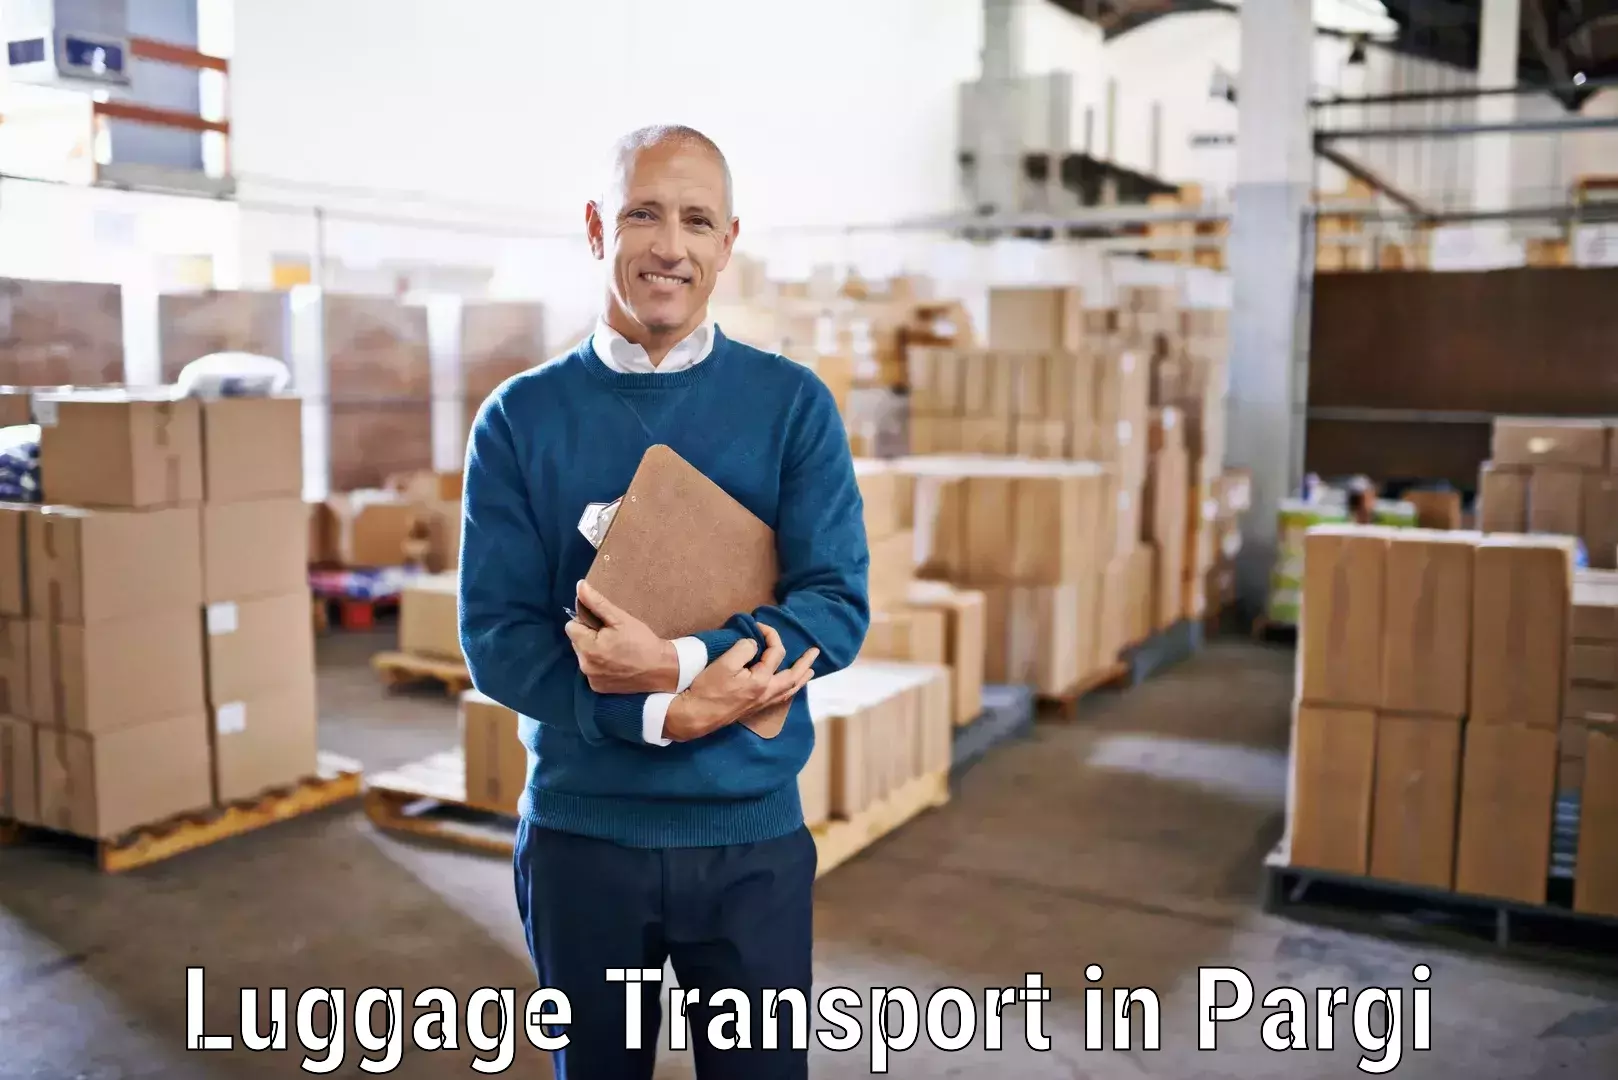 Baggage transport estimate in Pargi